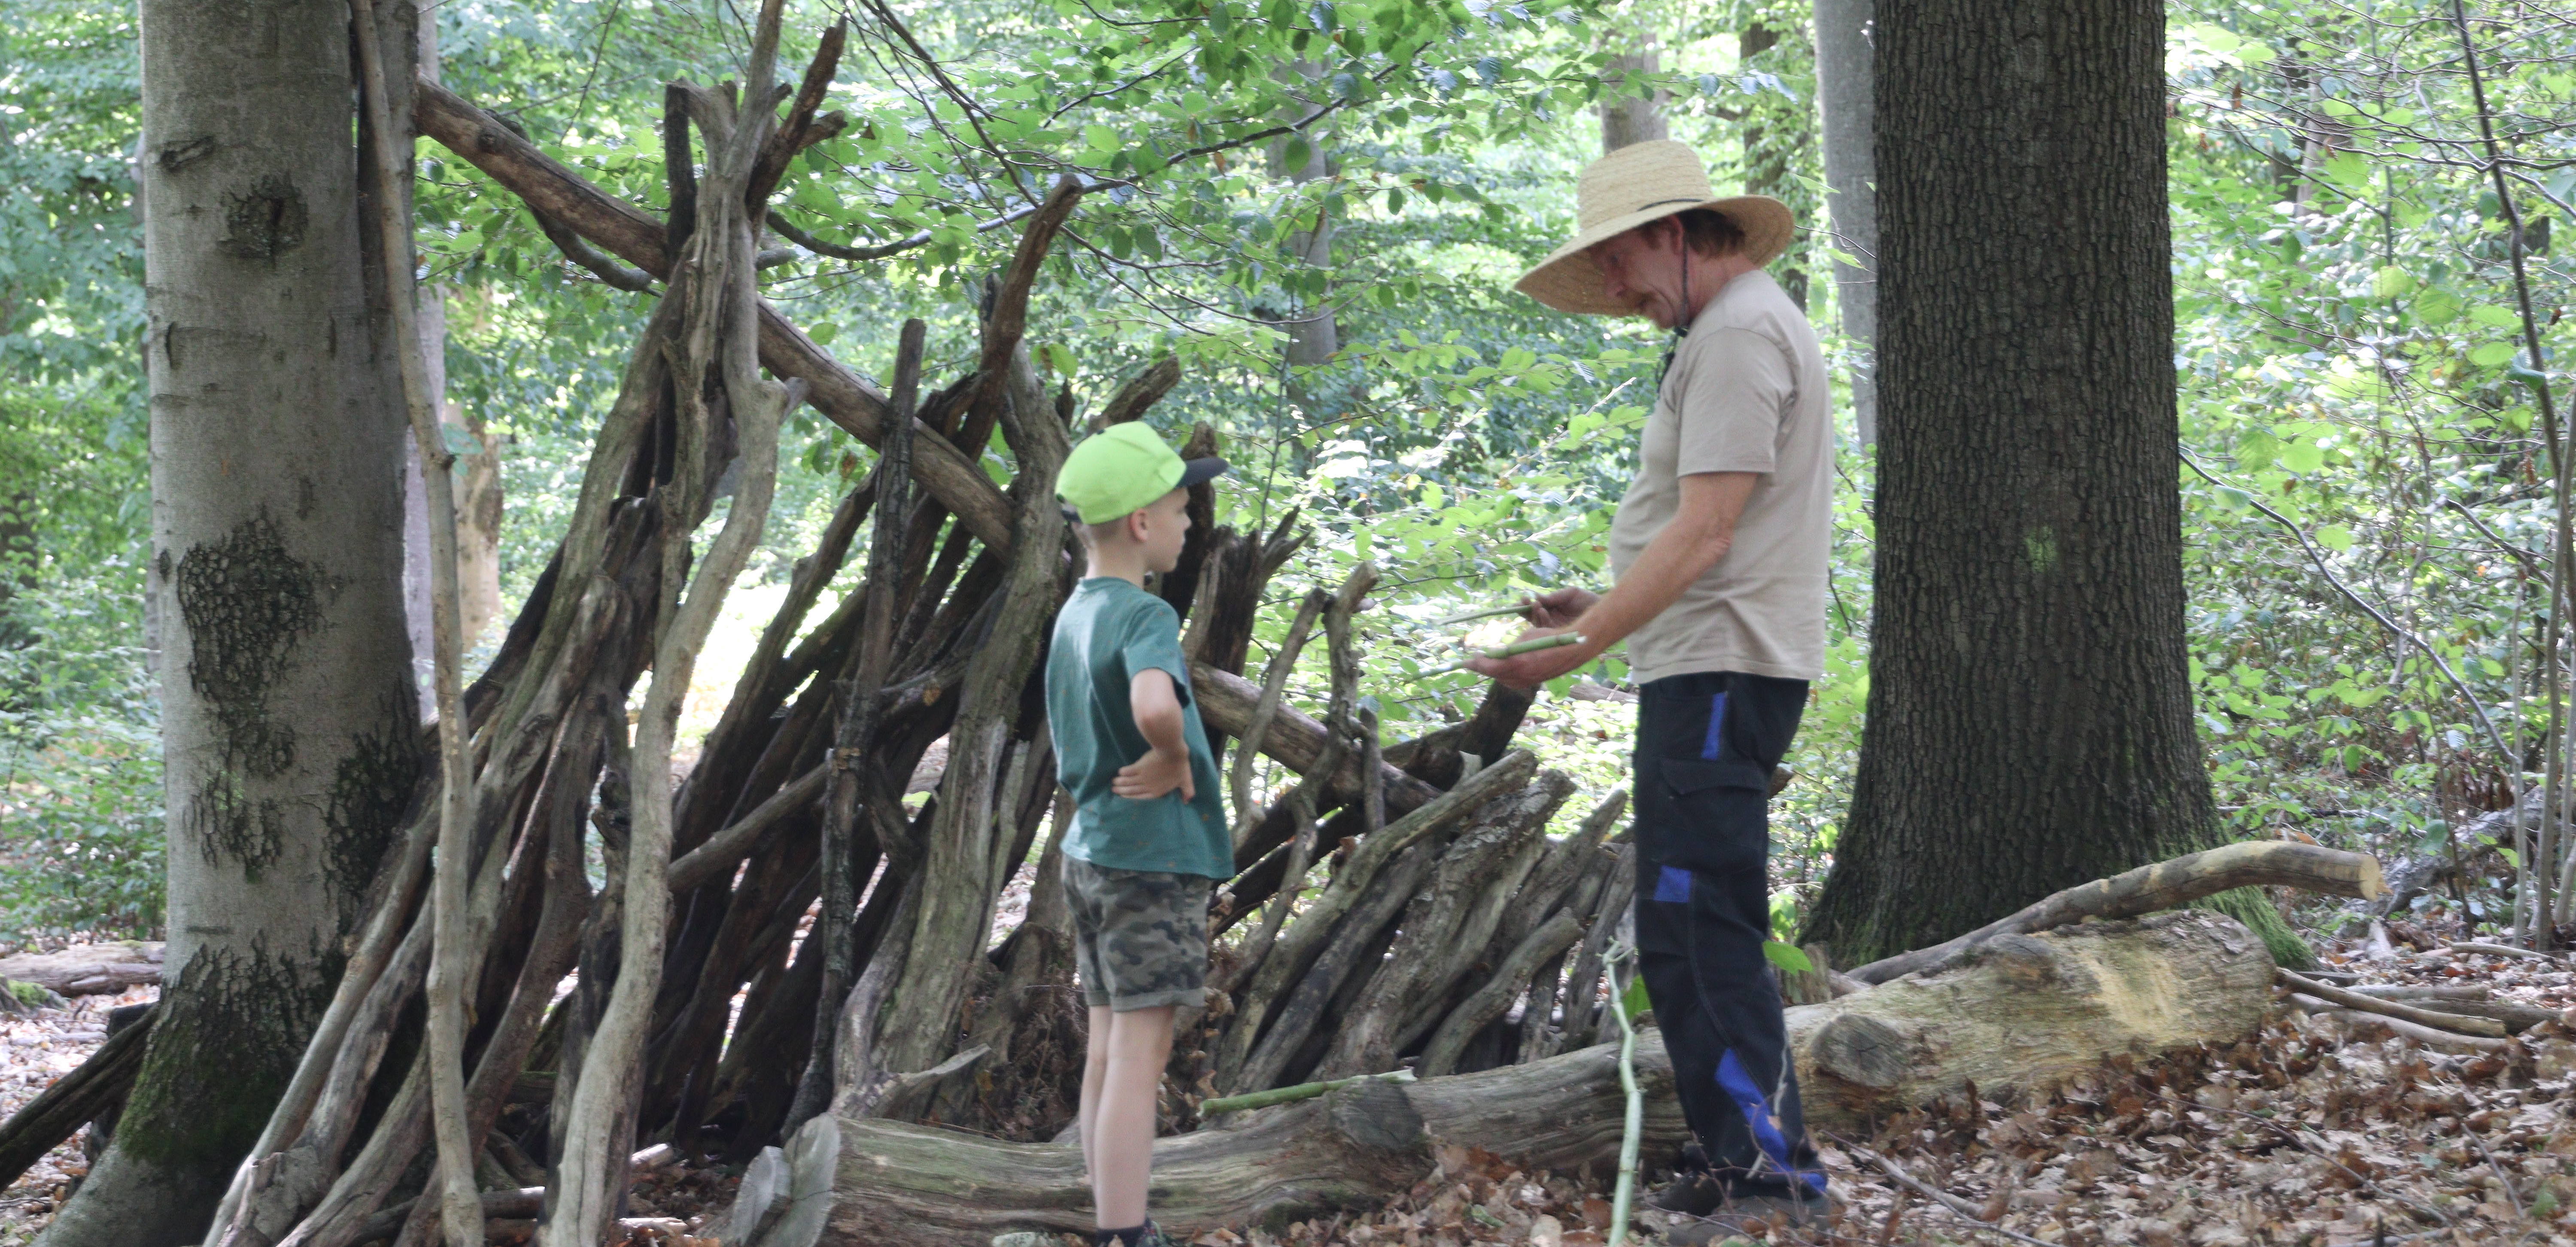 Guido und ein Kind am Bauen im Wald